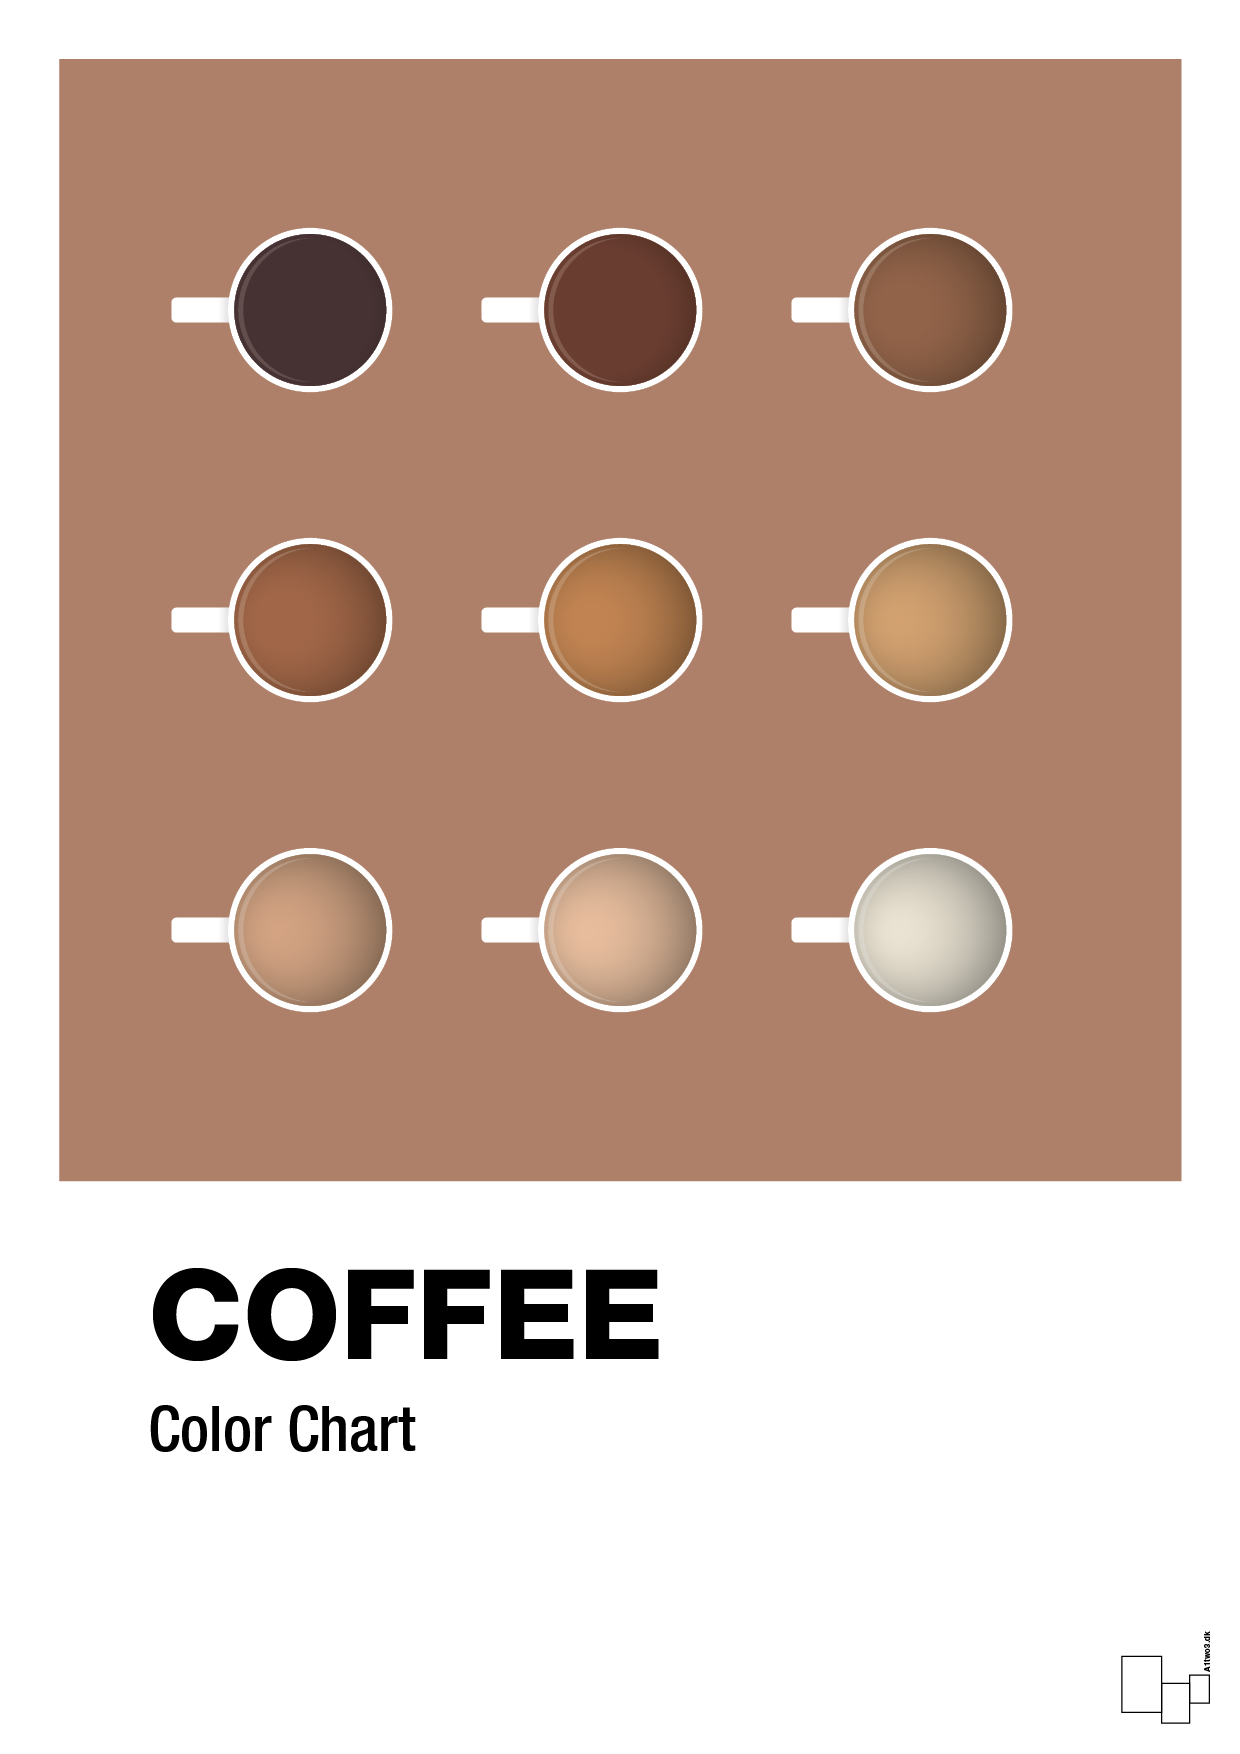 coffee color chart - Plakat med Mad & Drikke i Cider Spice